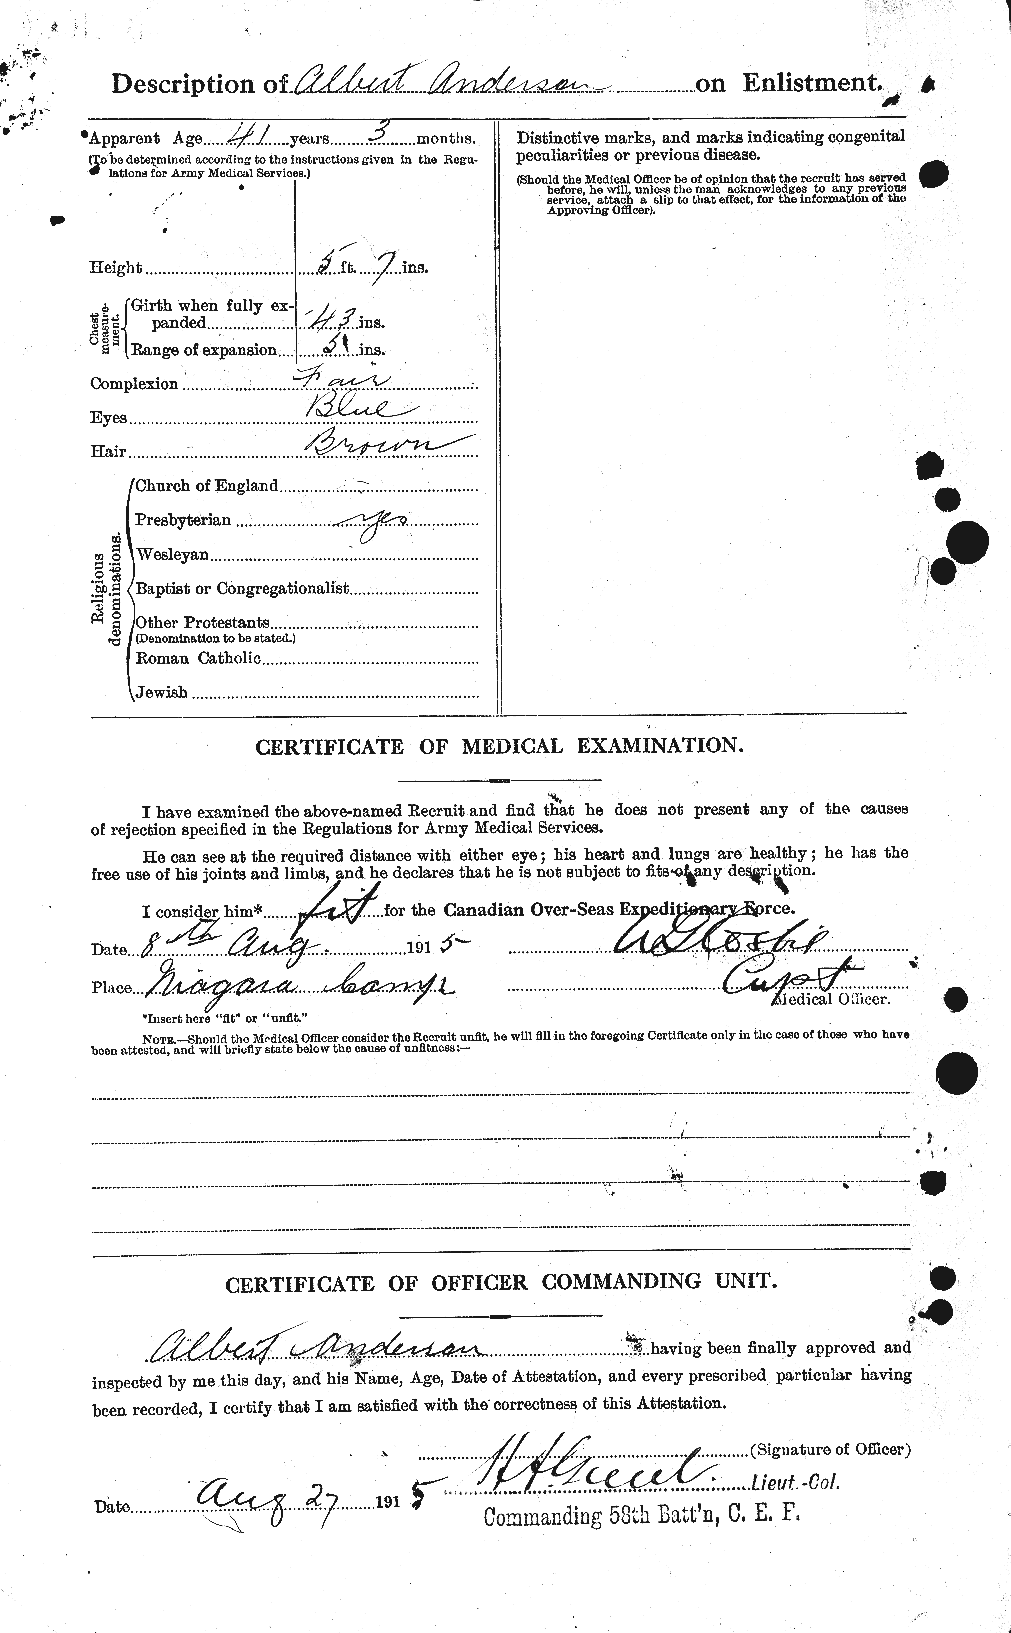 Dossiers du Personnel de la Première Guerre mondiale - CEC 209563b